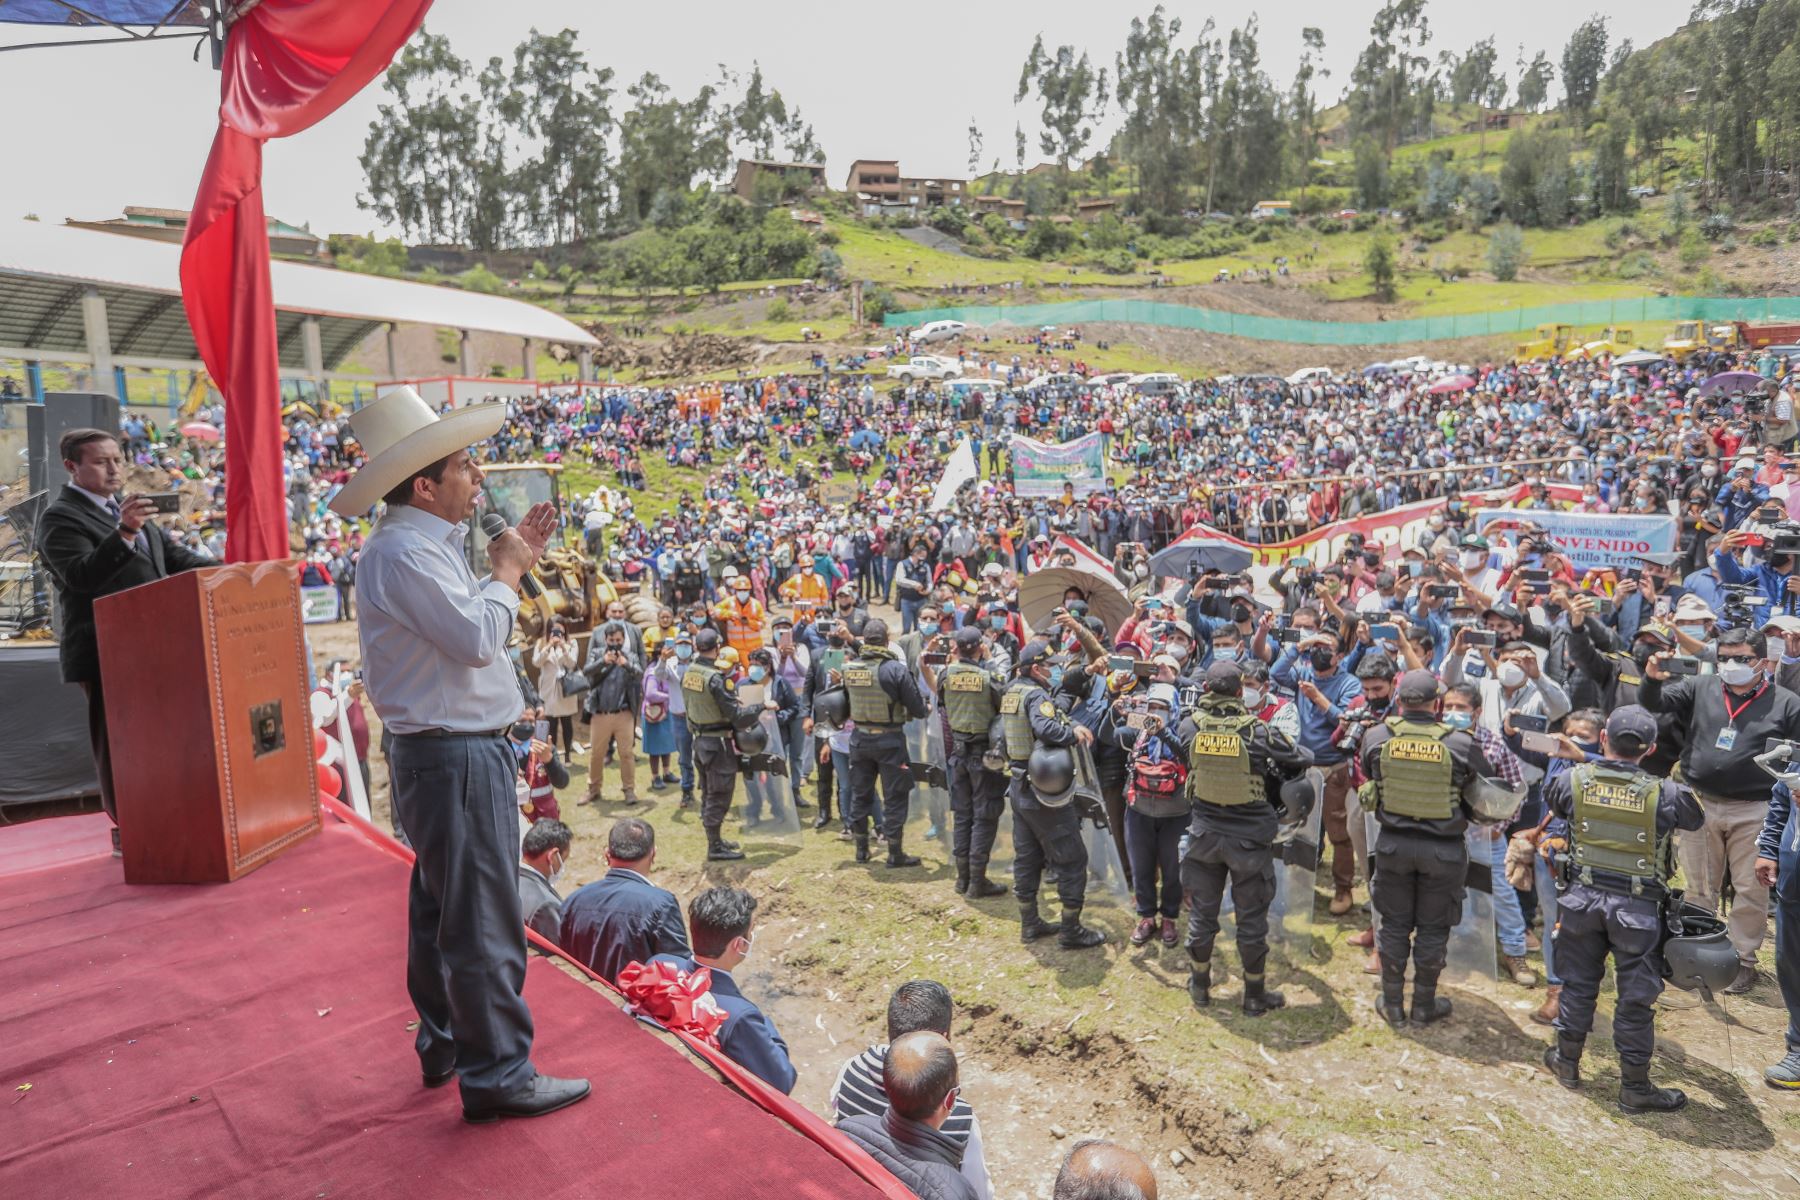 Presidente de la República, Pedro Castillo, visita la región Áncash para participar en la colocación de la primera piedra del Nuevo Hospital de Huari. Foto: ANDINA/Prensa Presidencia